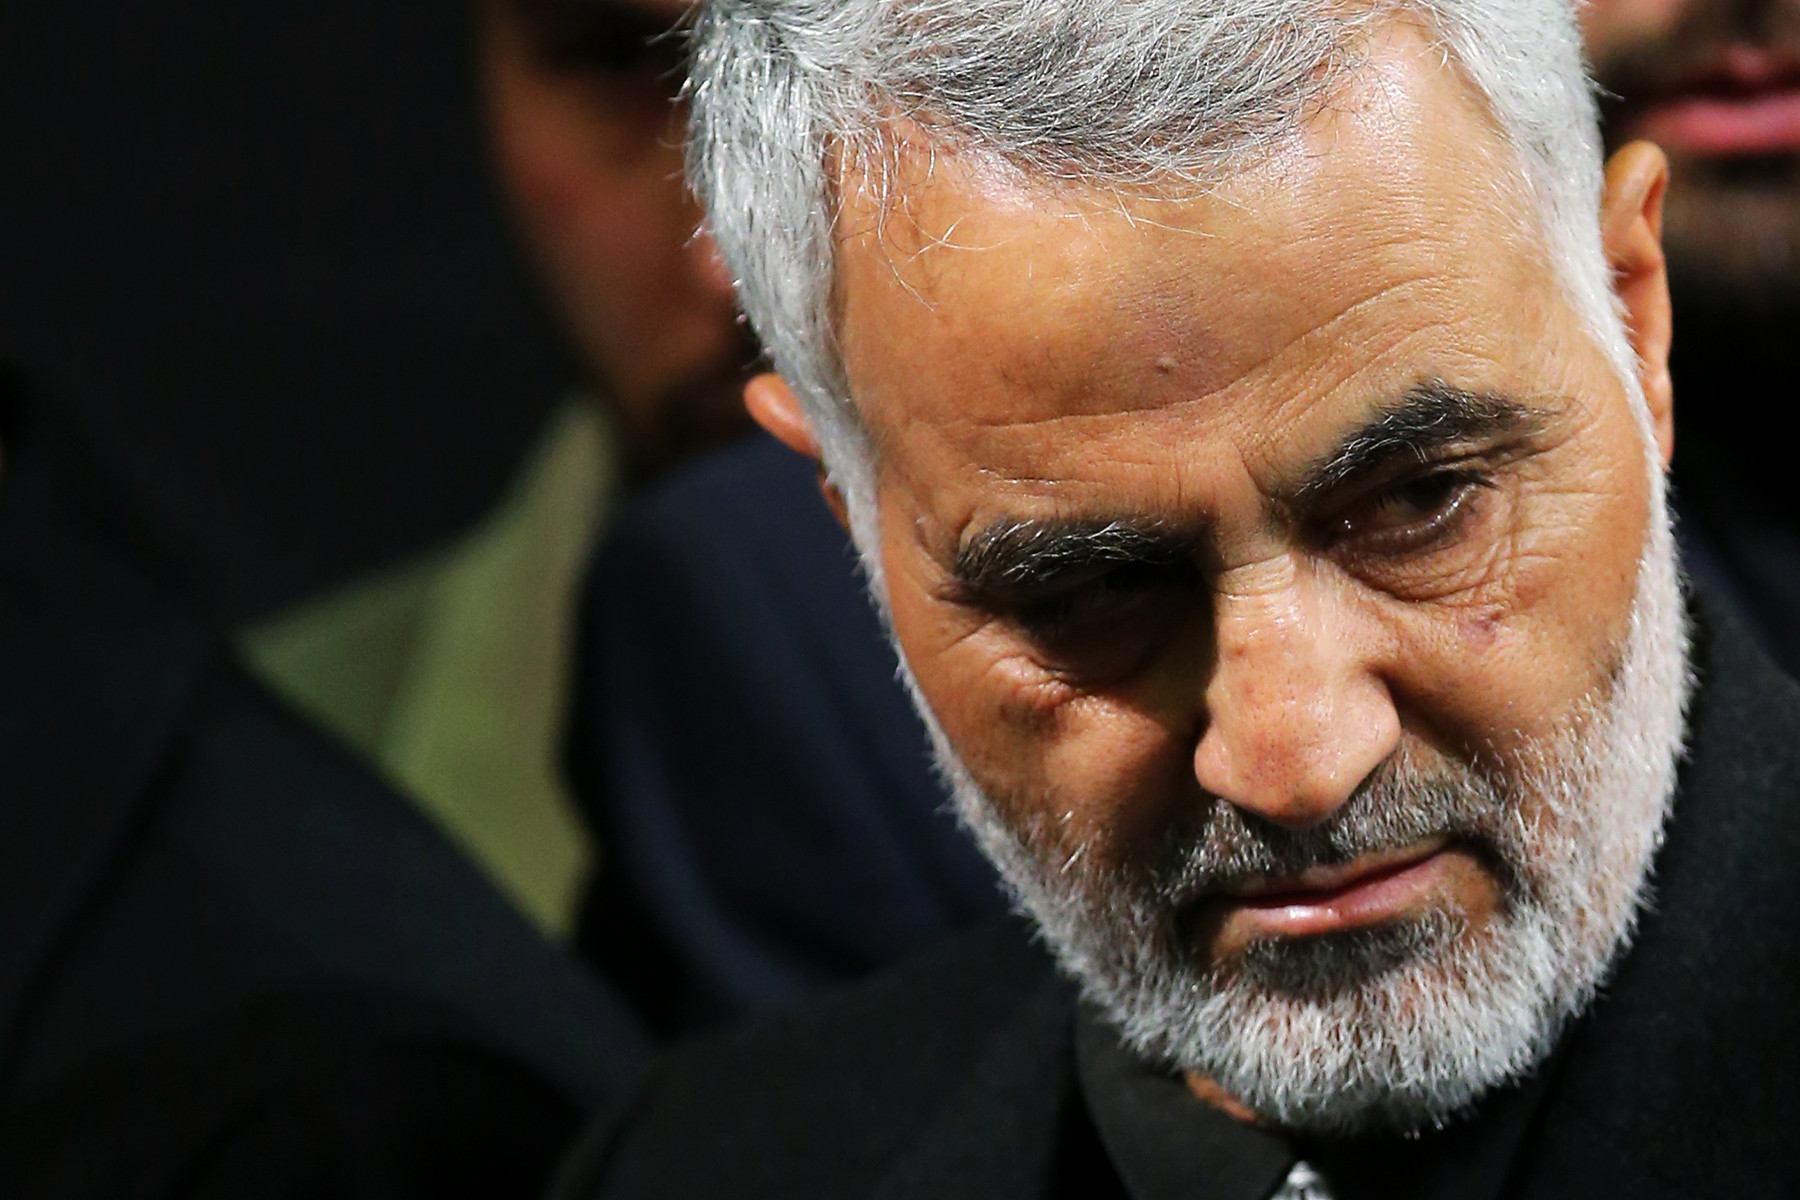 سردار سلیمانی: ظریف فقط یک ماموریت مشخص داشت و آن توافق هسته ای بود/ تحریم ها ده ها برابر هم شود، ایران حمایتش از فلسطین را قطع نمی کند